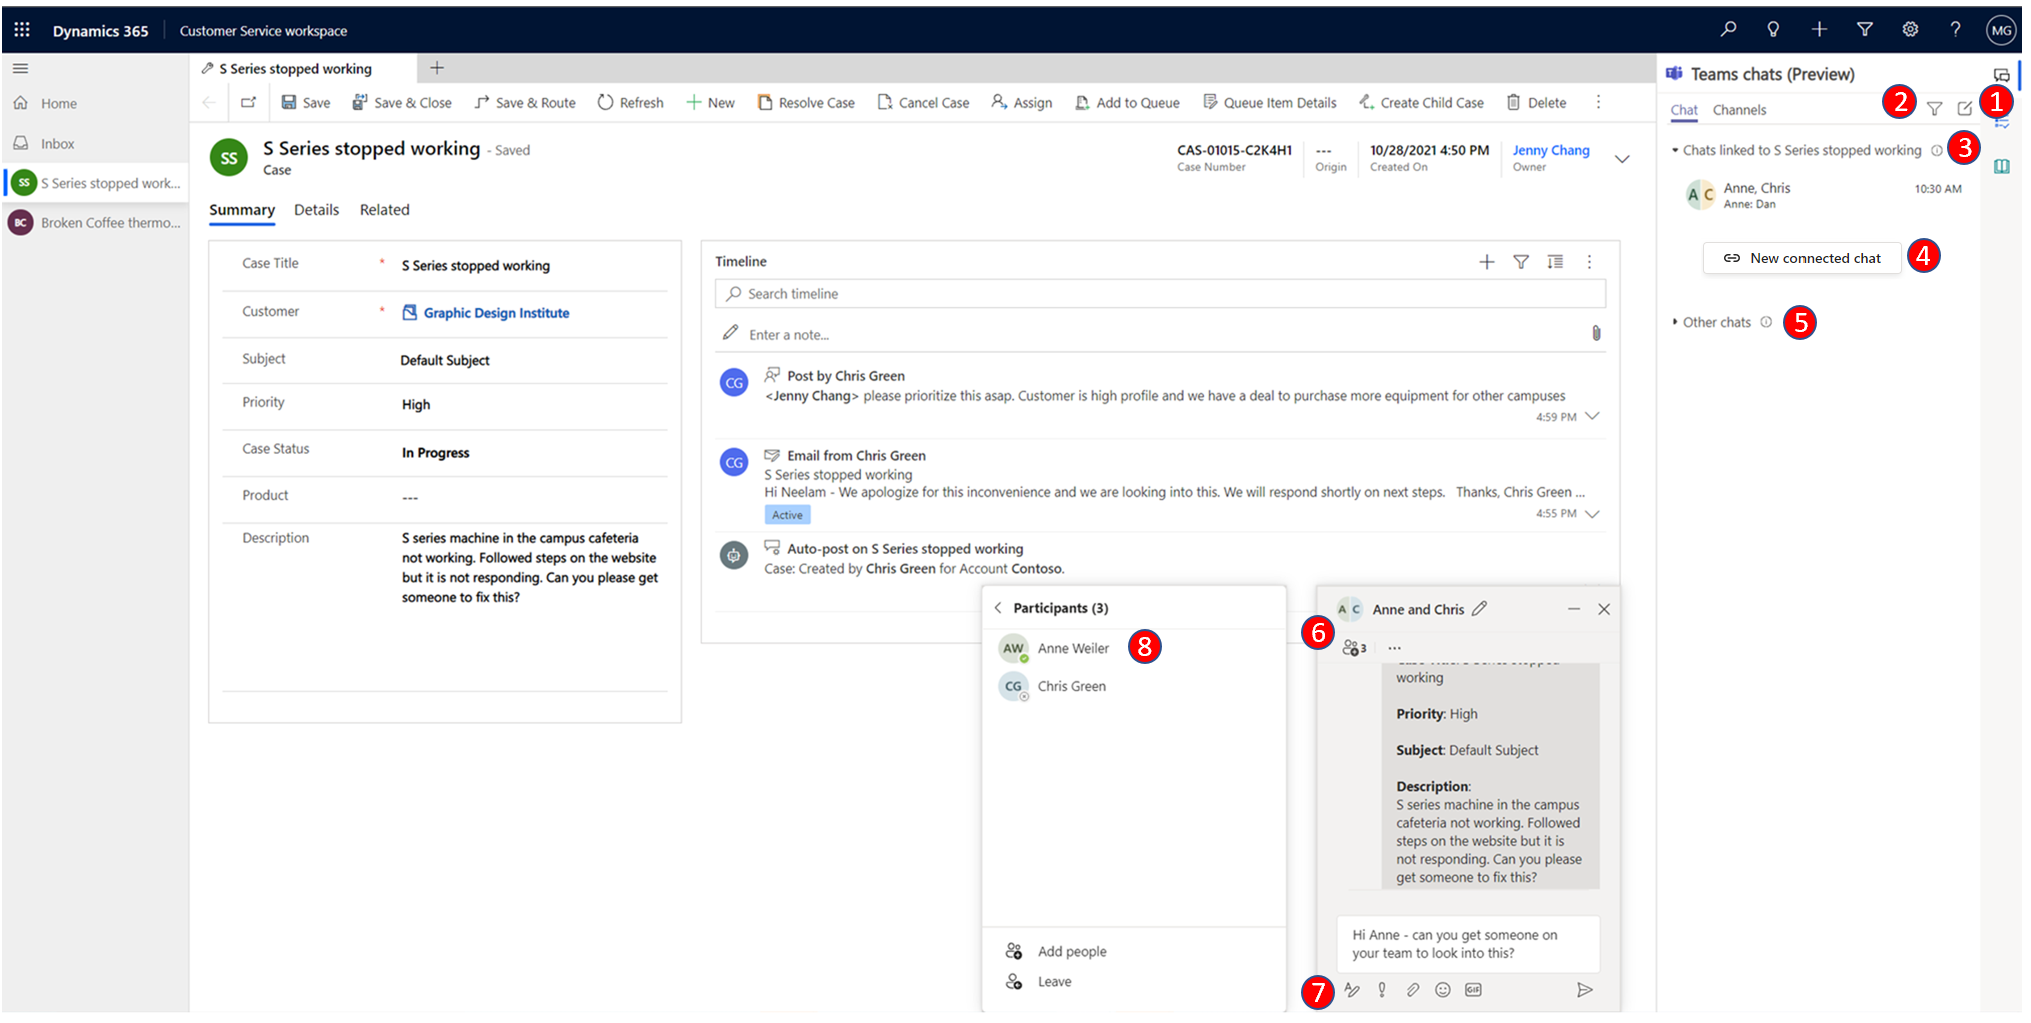 Zobrazení chatu Microsoft Teams pro agenta v Dynamics 365 Customer Service.